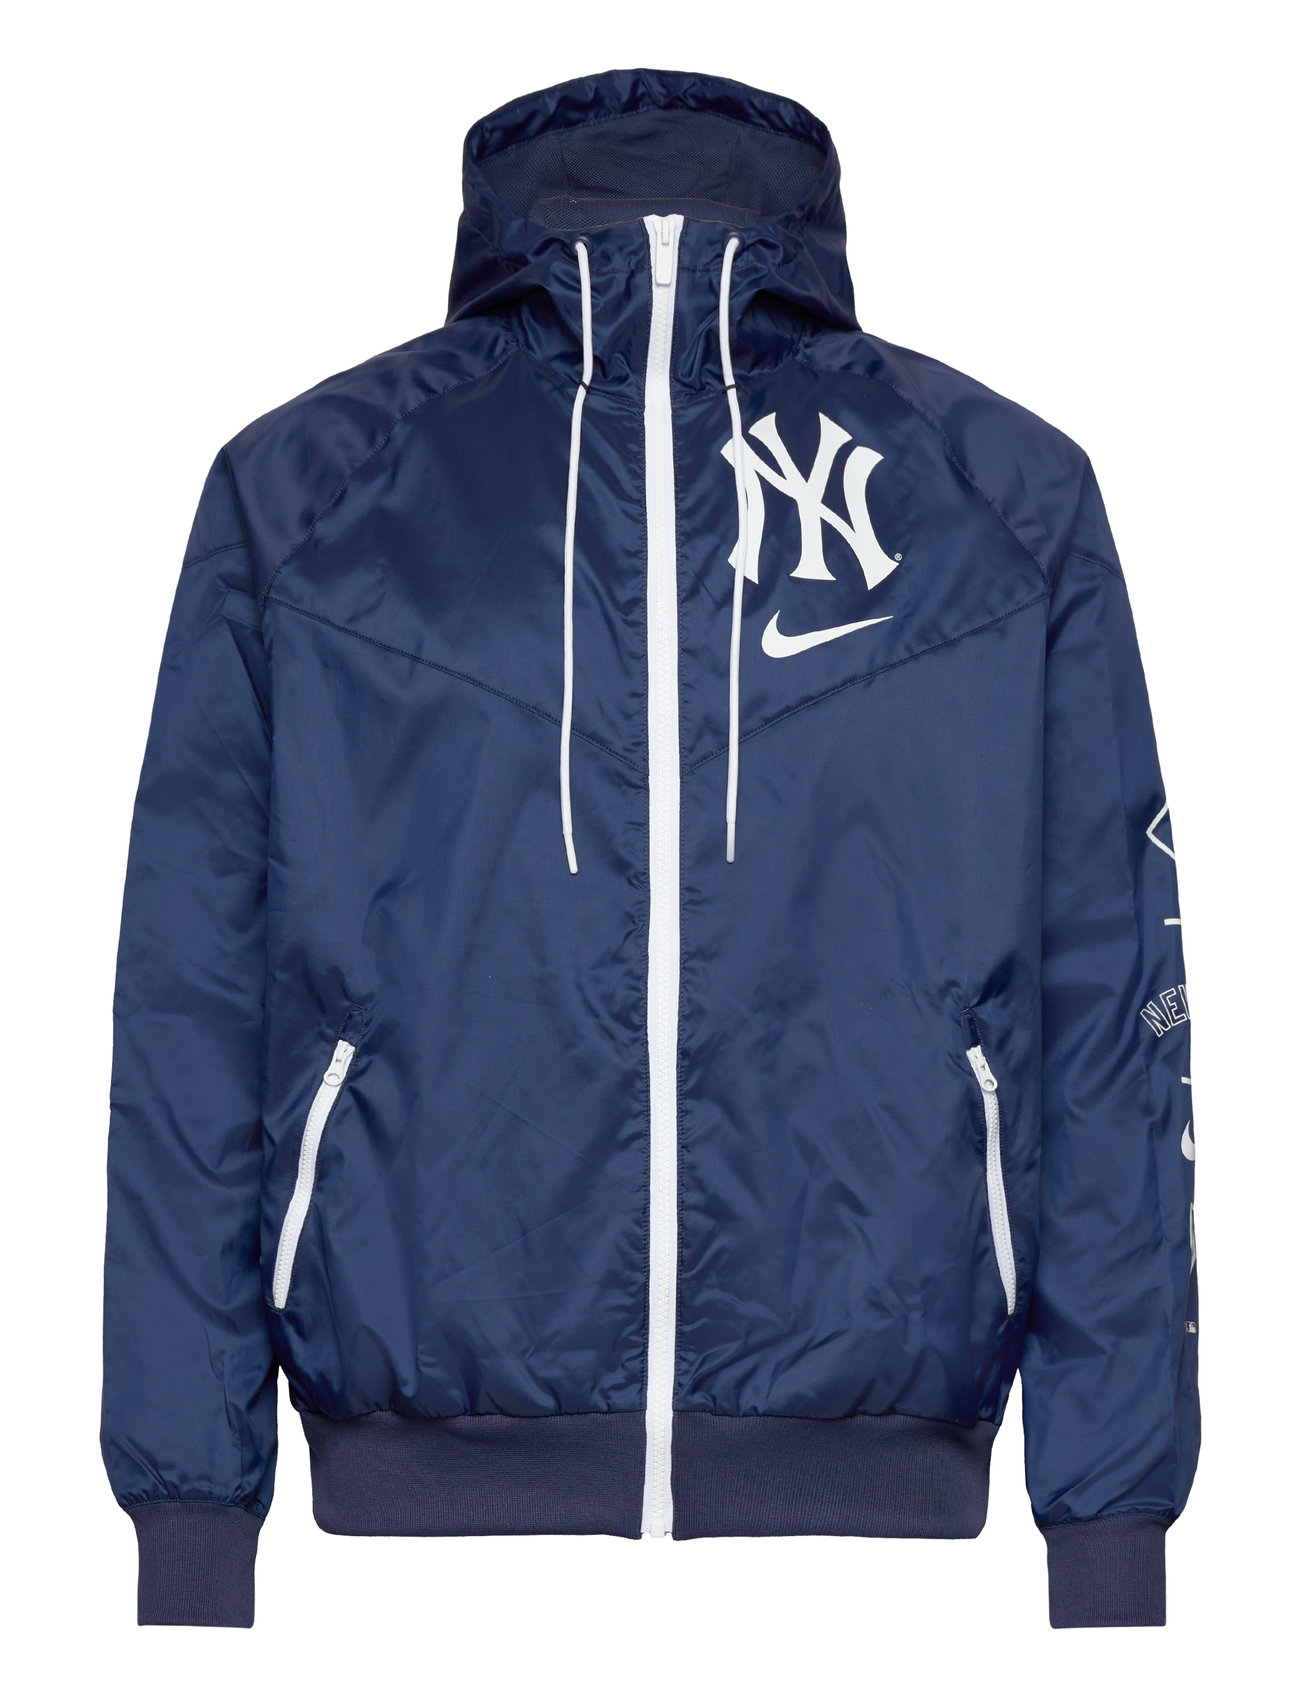 New York Yankees Men's Nike Team Runner Windrunner Jacket Sport Jackets Windbreakers Navy NIKE Fan Gear